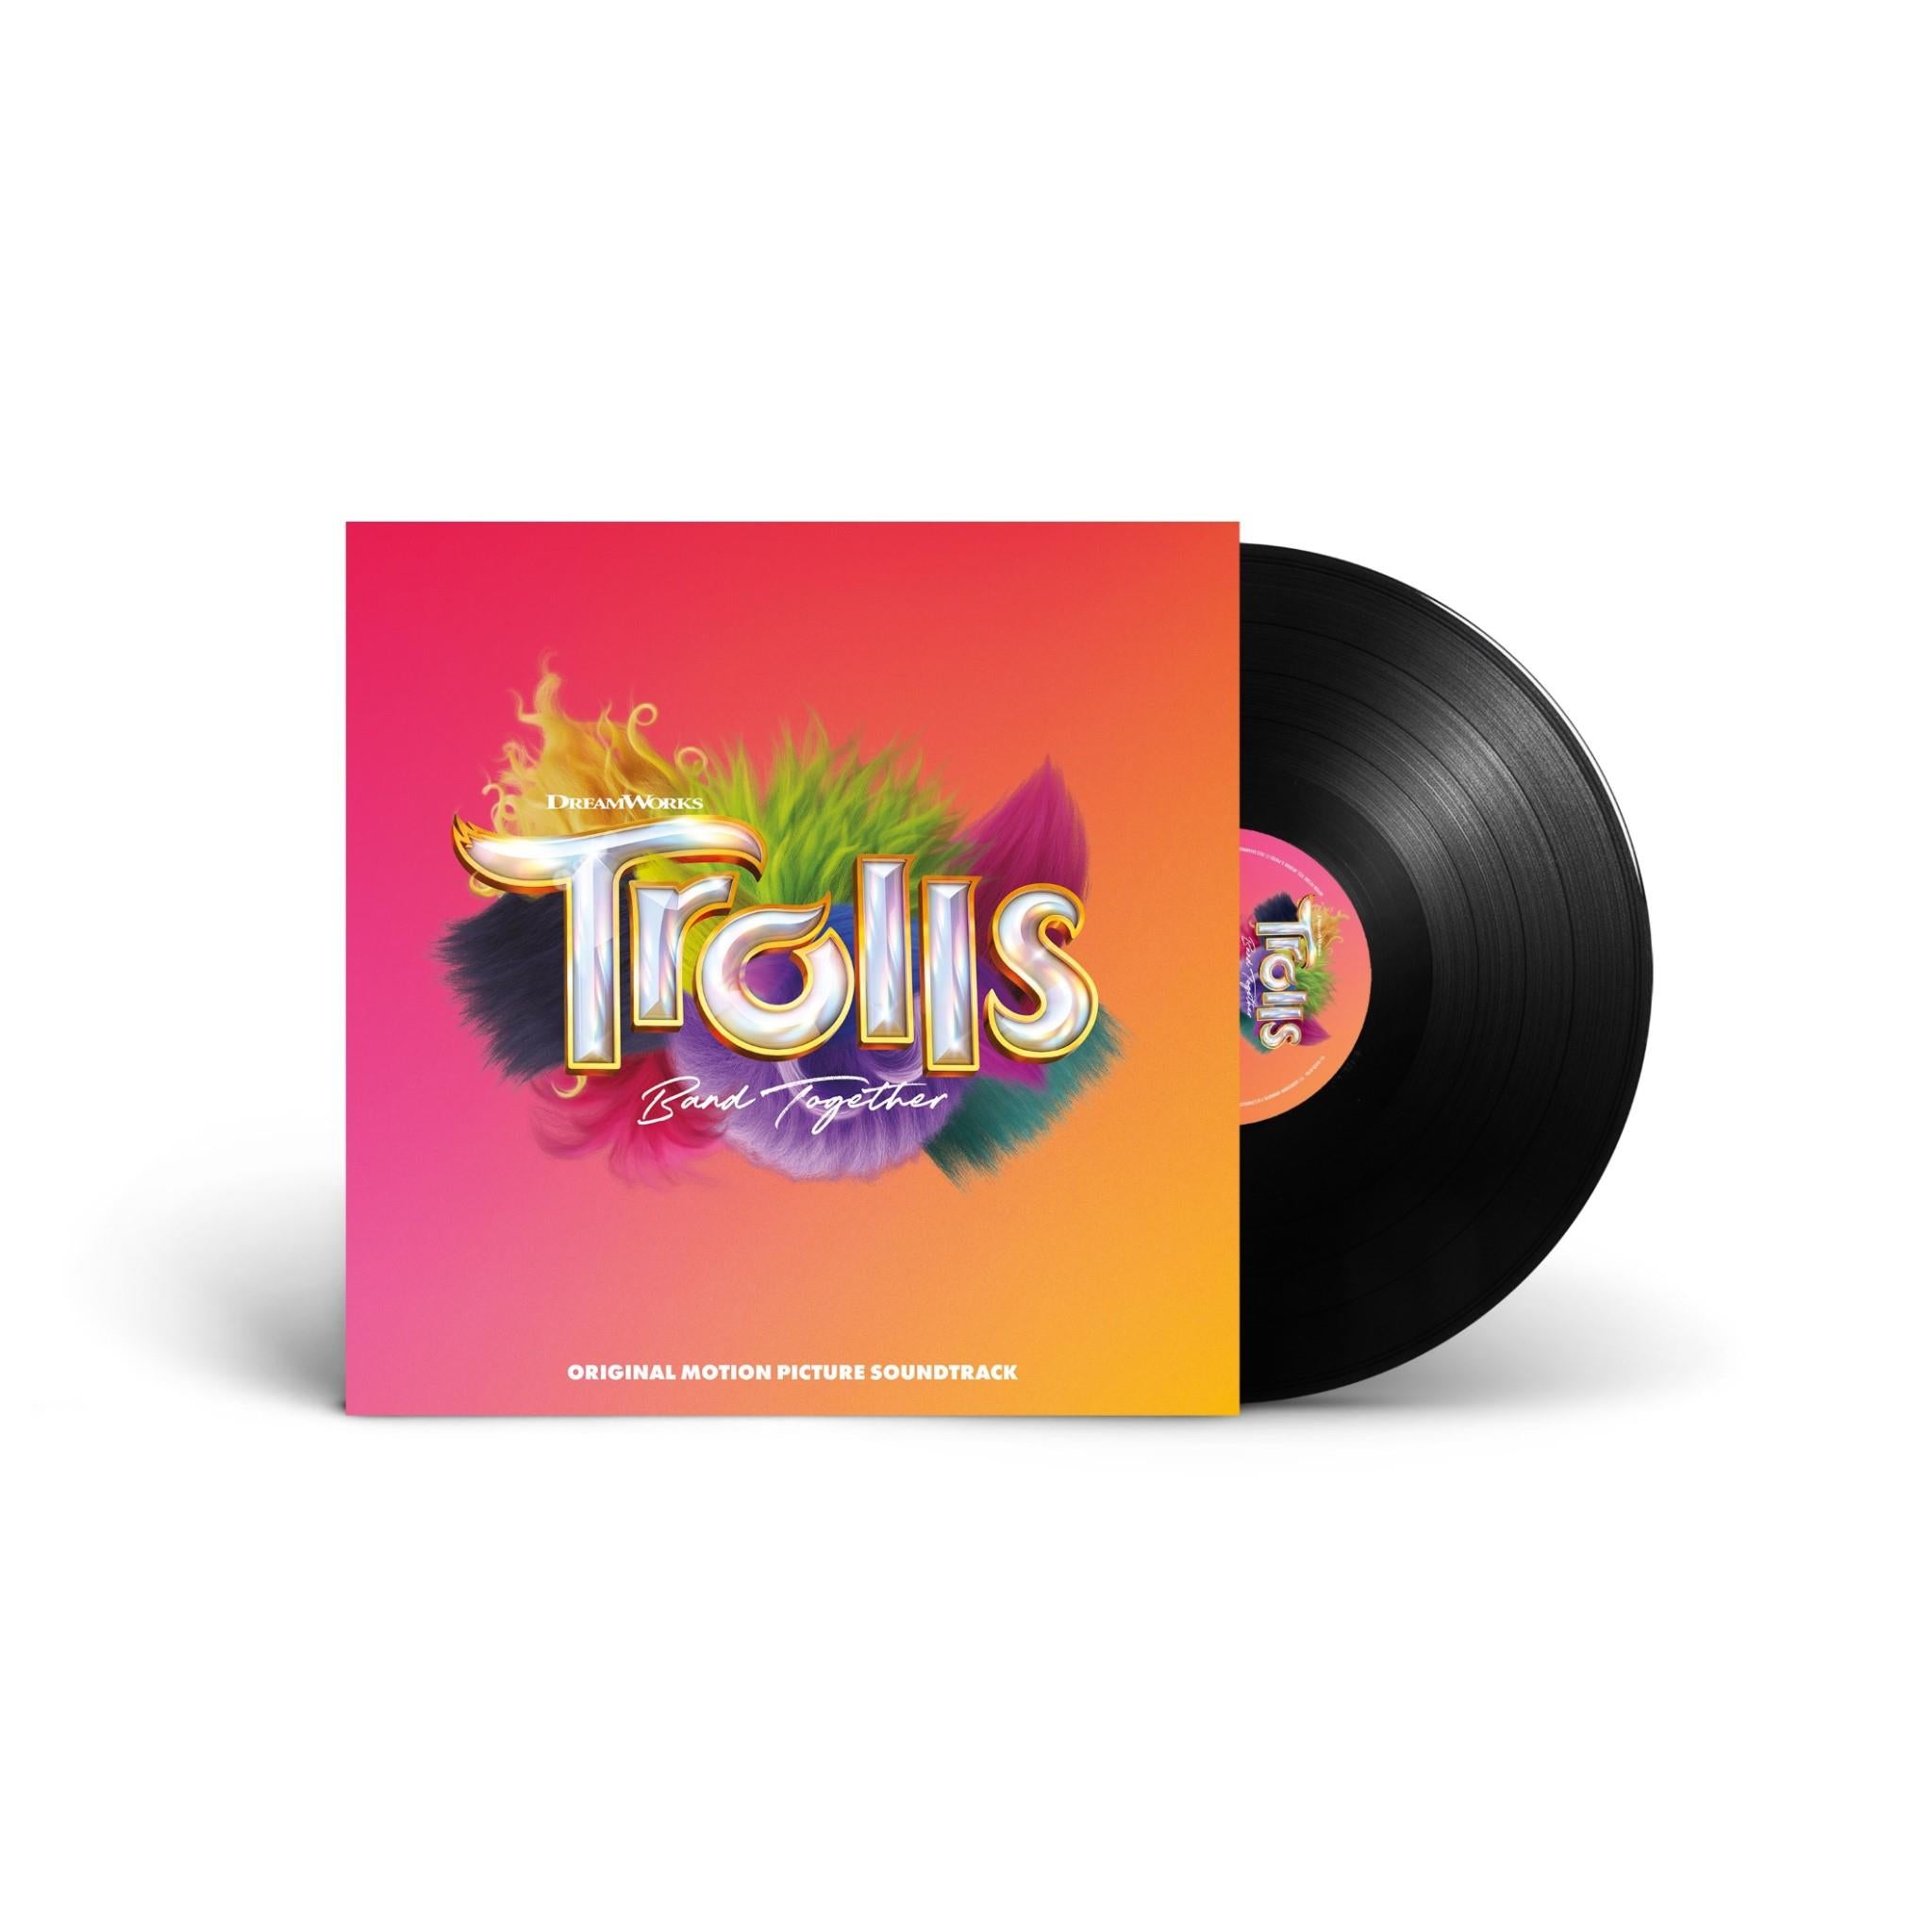 trolls band together (original motion picture soundtrack vinyl)